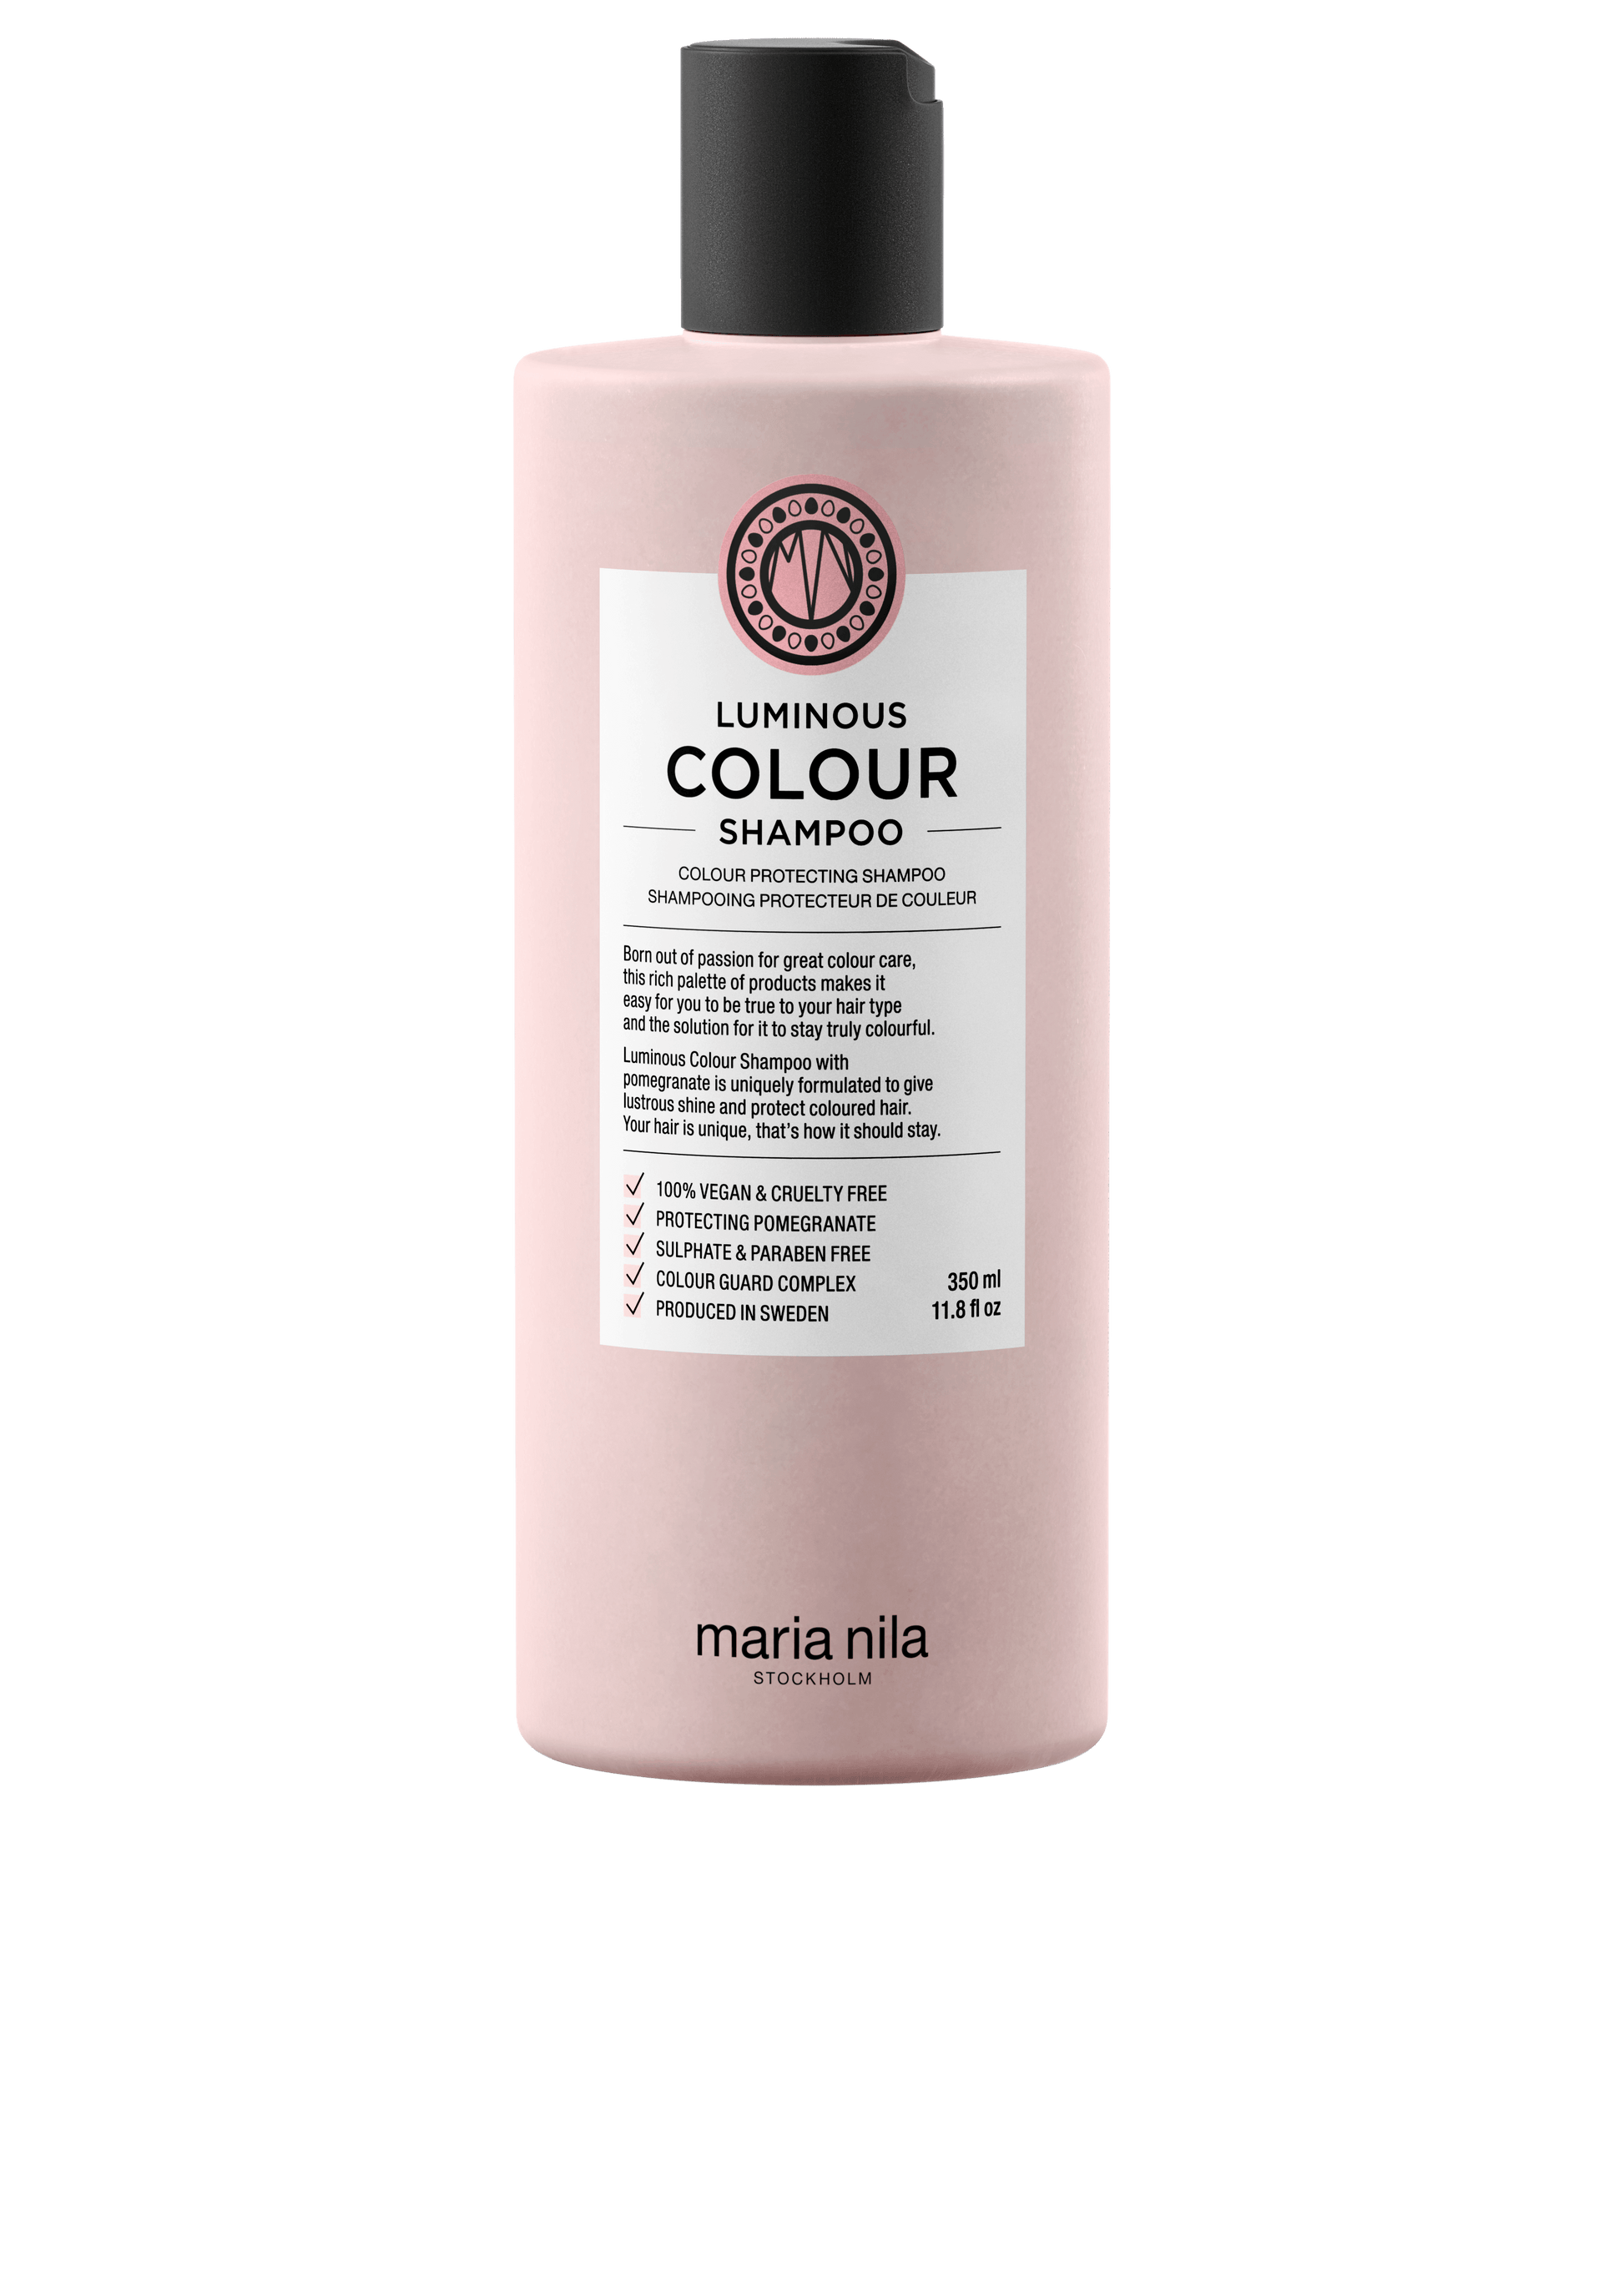 Luminous Colour Shampoo - The Coloroom 